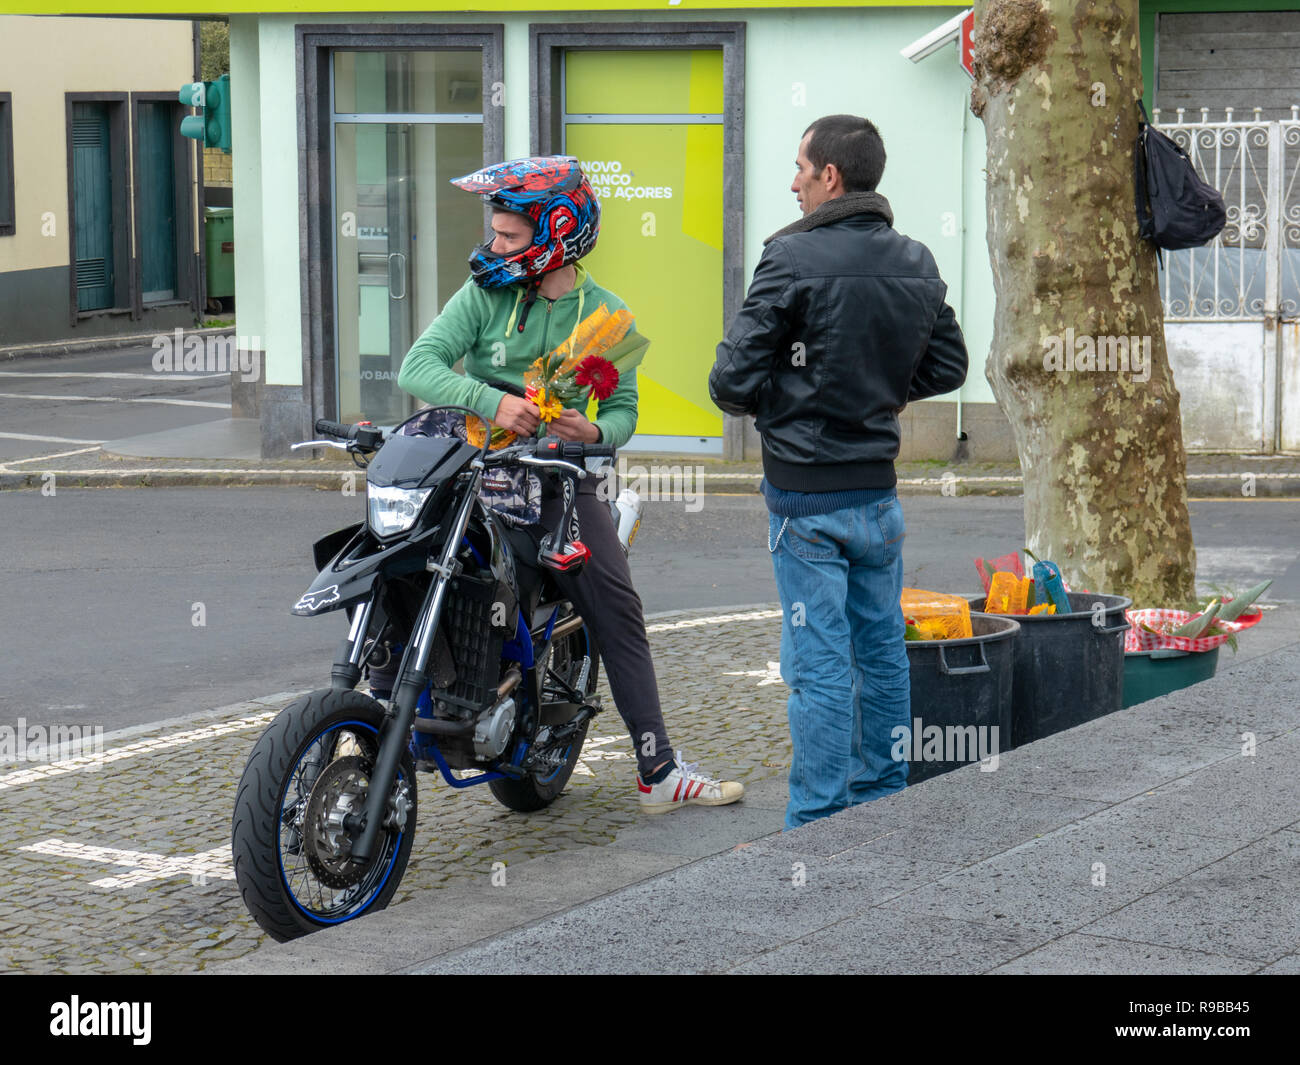 Motorrad fahrer mit Helm auf stoppt einen Blumenstrauß von einem männlichen  Street Hersteller vor 'neue Bank der Azoren" kaufen Stockfotografie - Alamy